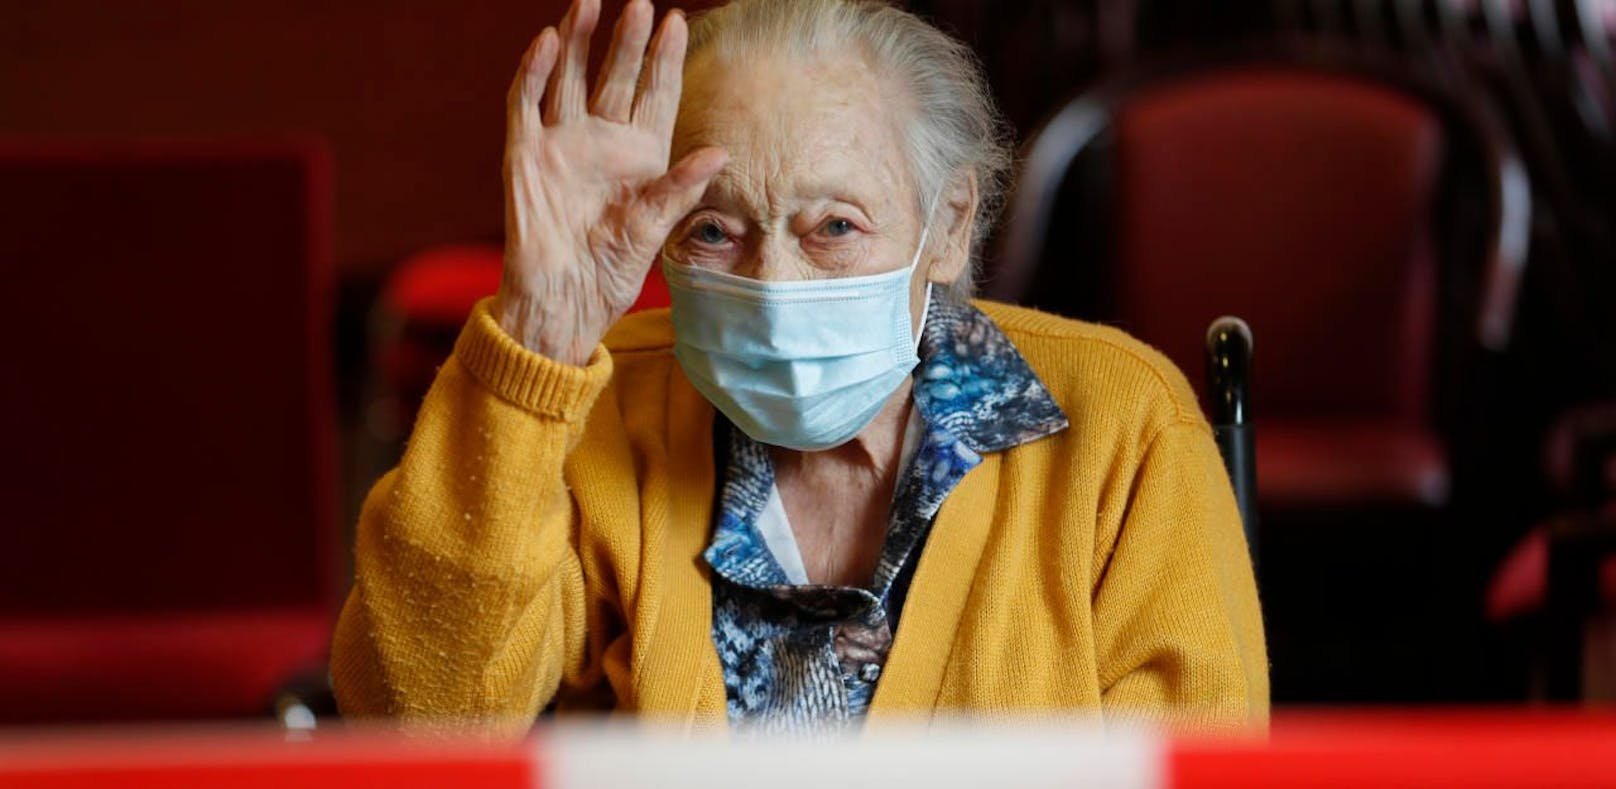 Besuche im Pflegeheim sind bald auch in Wien wieder möglich. Hier winkt die 94-jährige Marguerite Mouille in Frankreich ihrer Tochter, die sie am 21. April besucht hat.